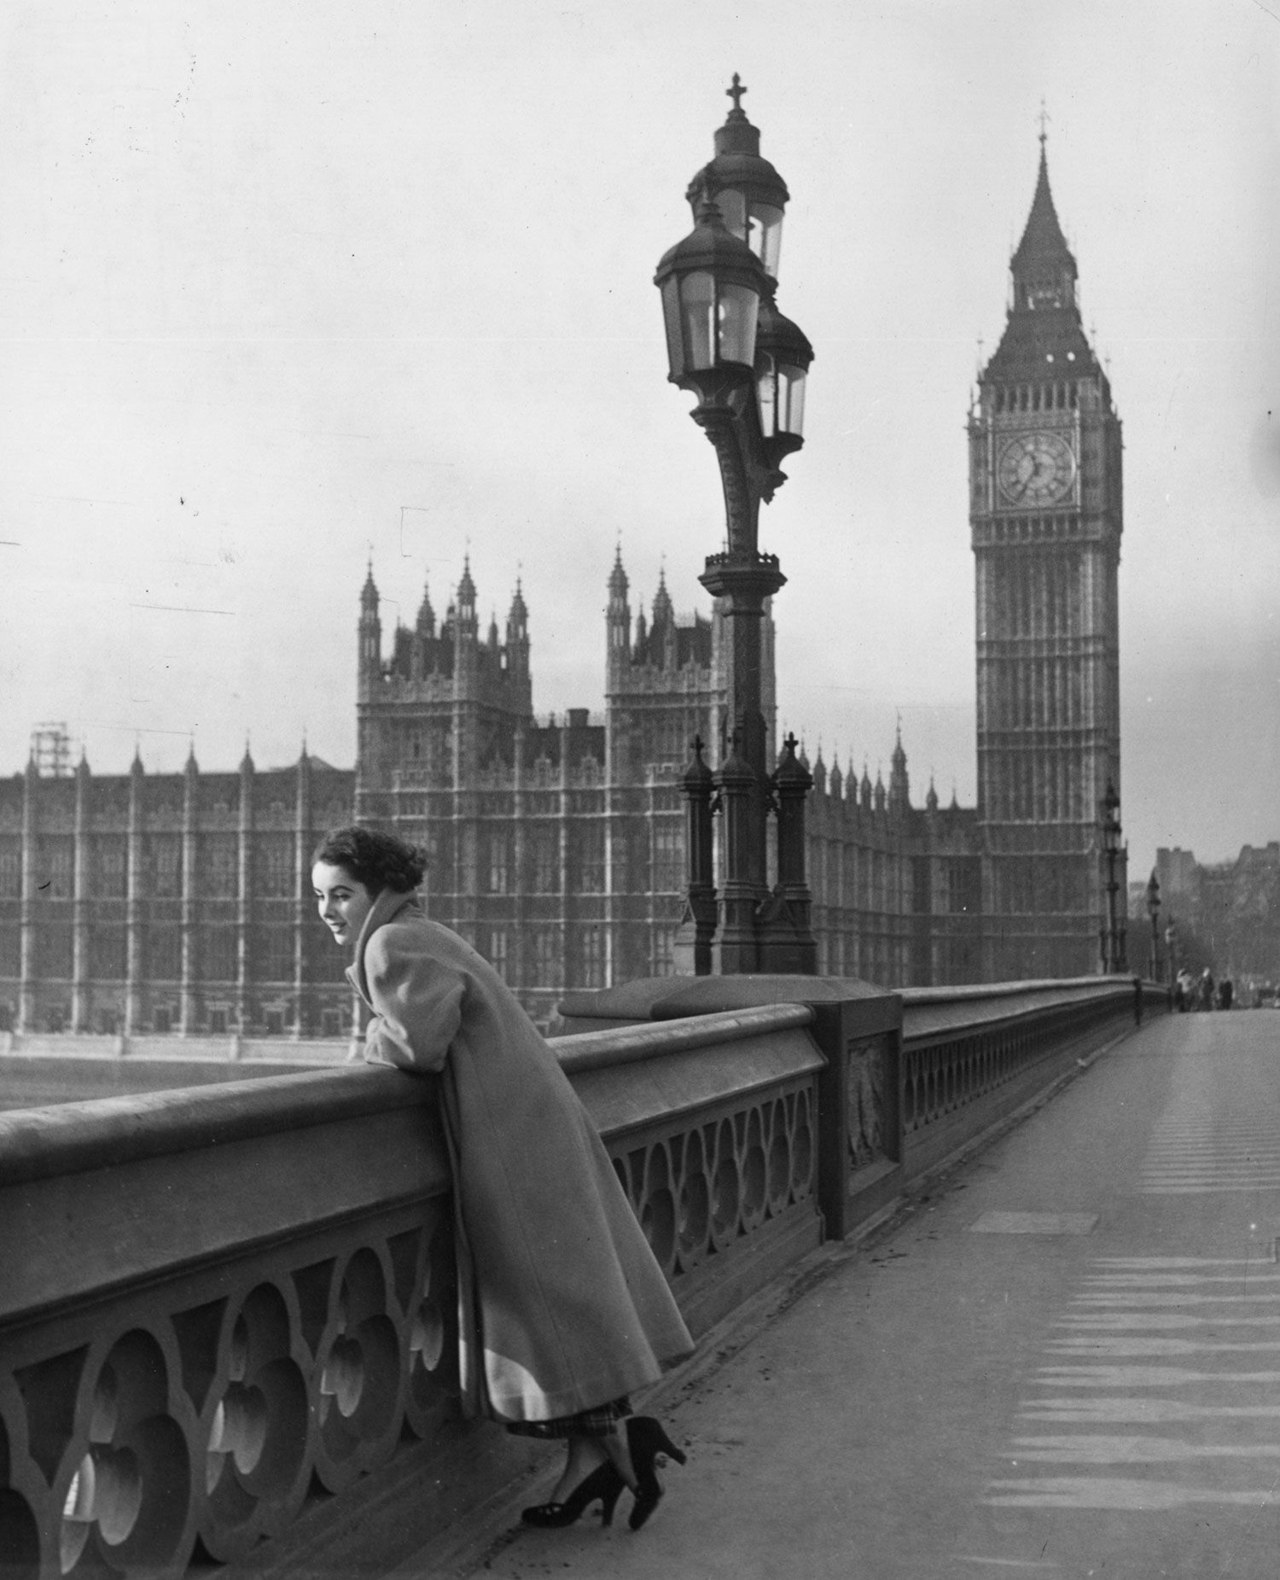 اليزابيث taylor on bridge london